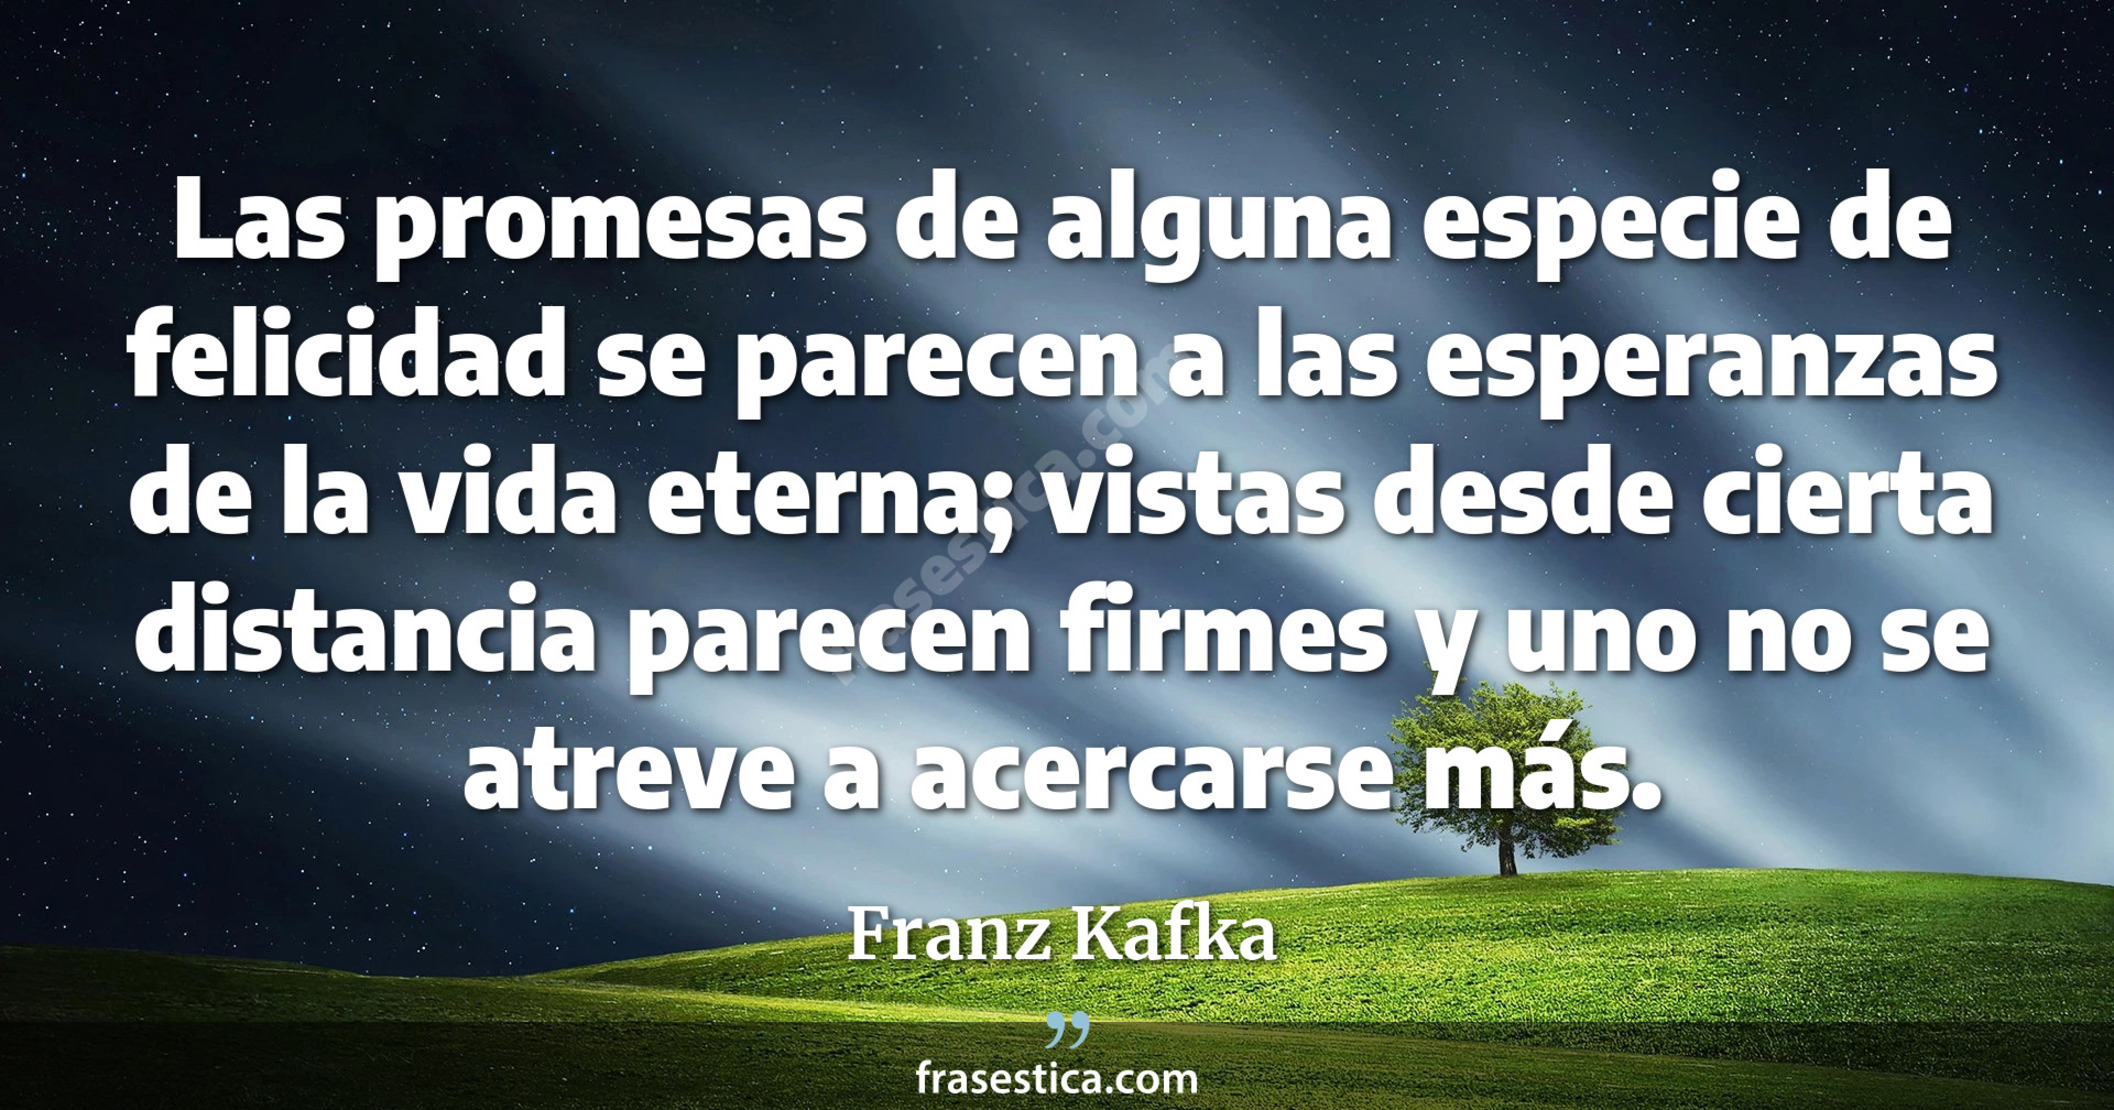 Las promesas de alguna especie de felicidad se parecen a las esperanzas de la vida eterna; vistas desde cierta distancia parecen firmes y uno no se atreve a acercarse más. - Franz Kafka